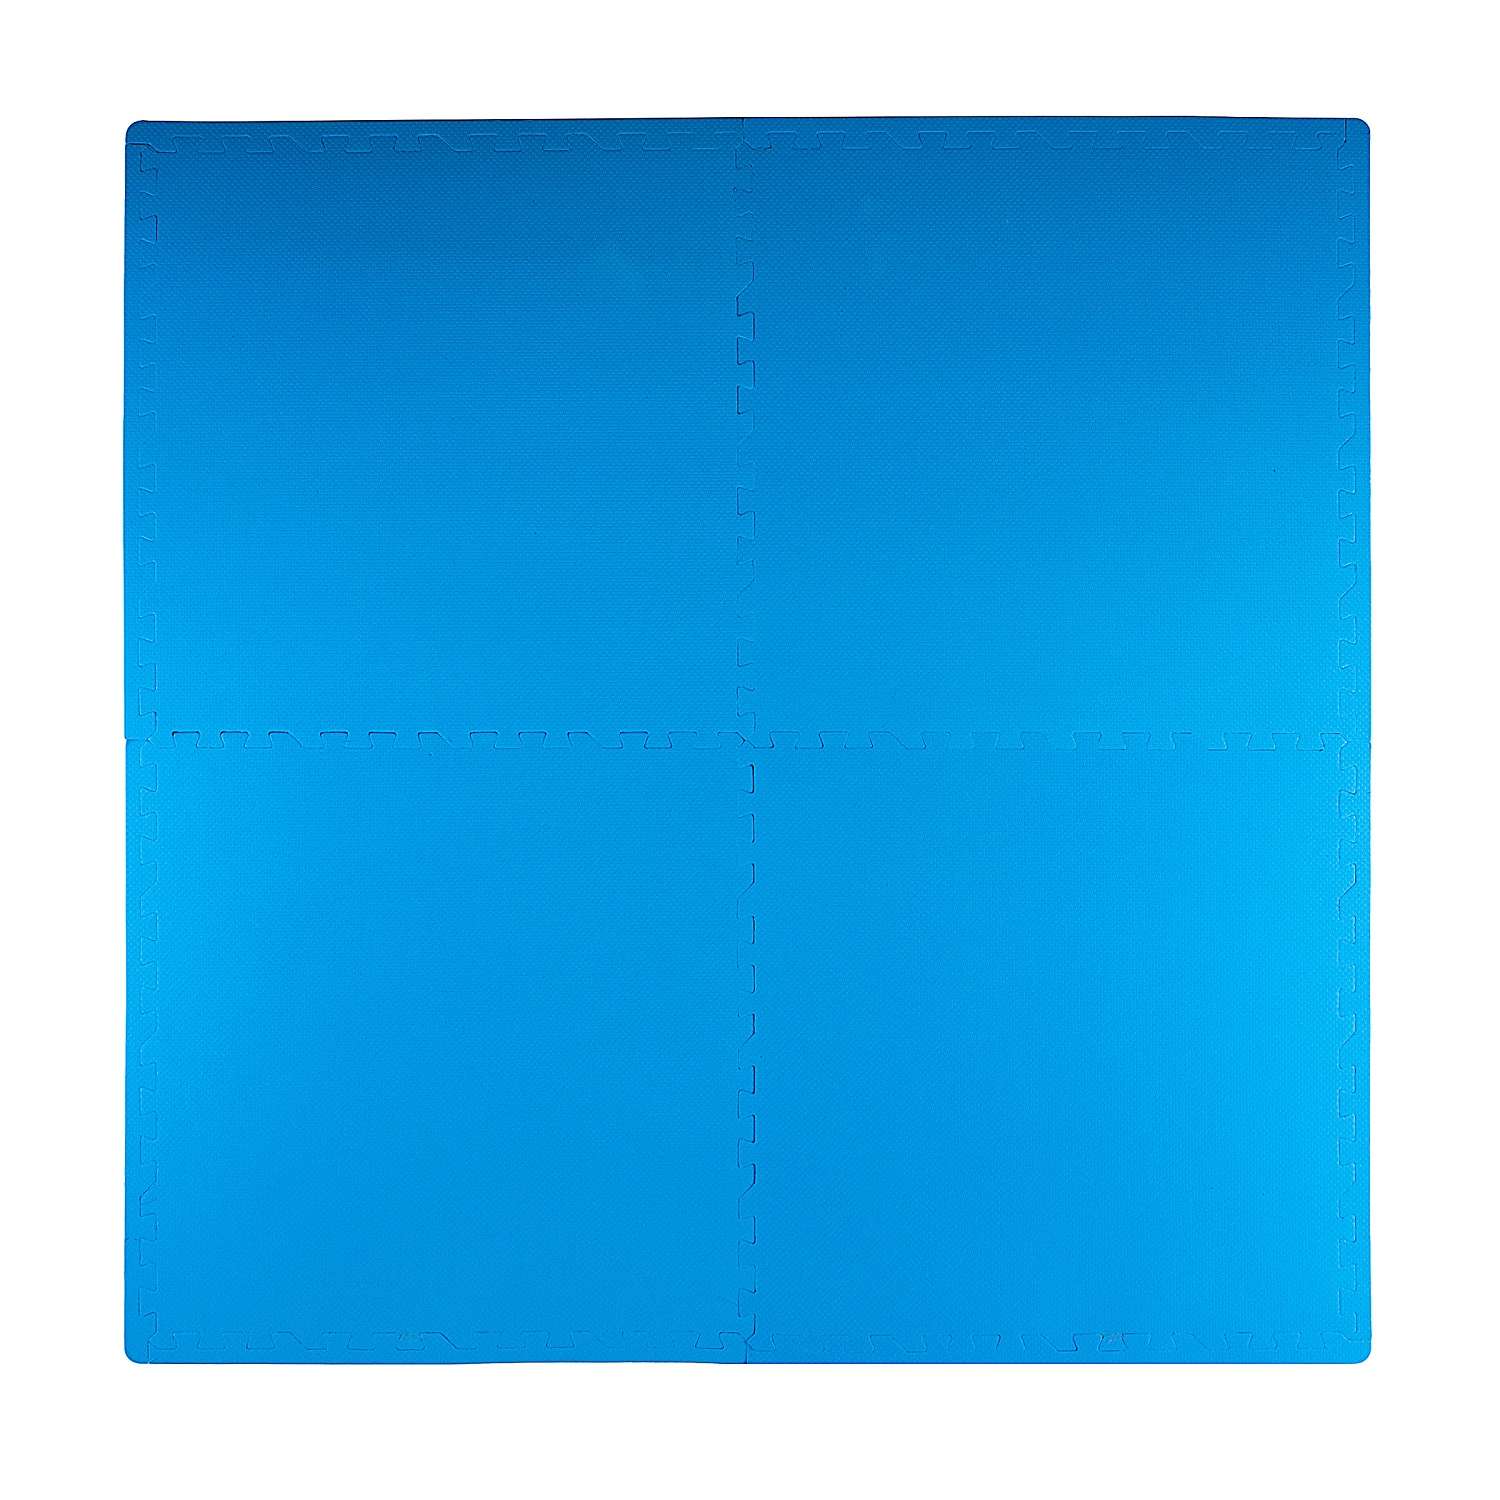 Развивающий детский коврик Eco cover игровой для ползания мягкий пол синий 60х60 - фото 2